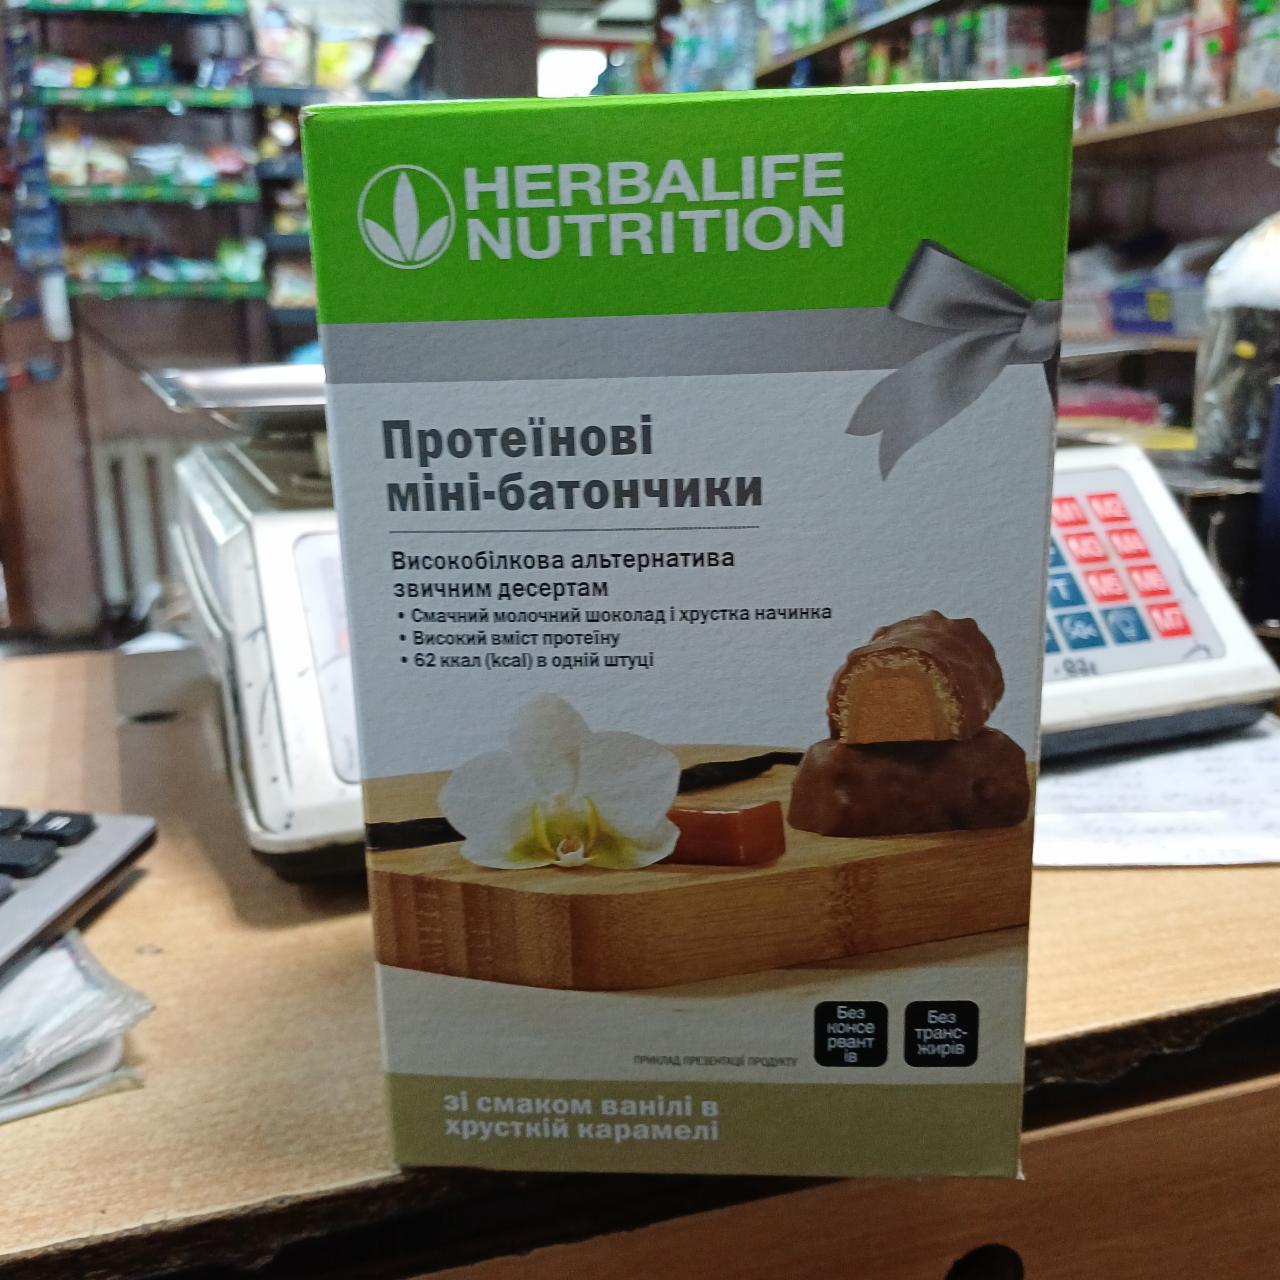 Фото - Протеїнові міні-батончики зі смаком ванілі в хрусткій карамелі Herbalife Nutrition